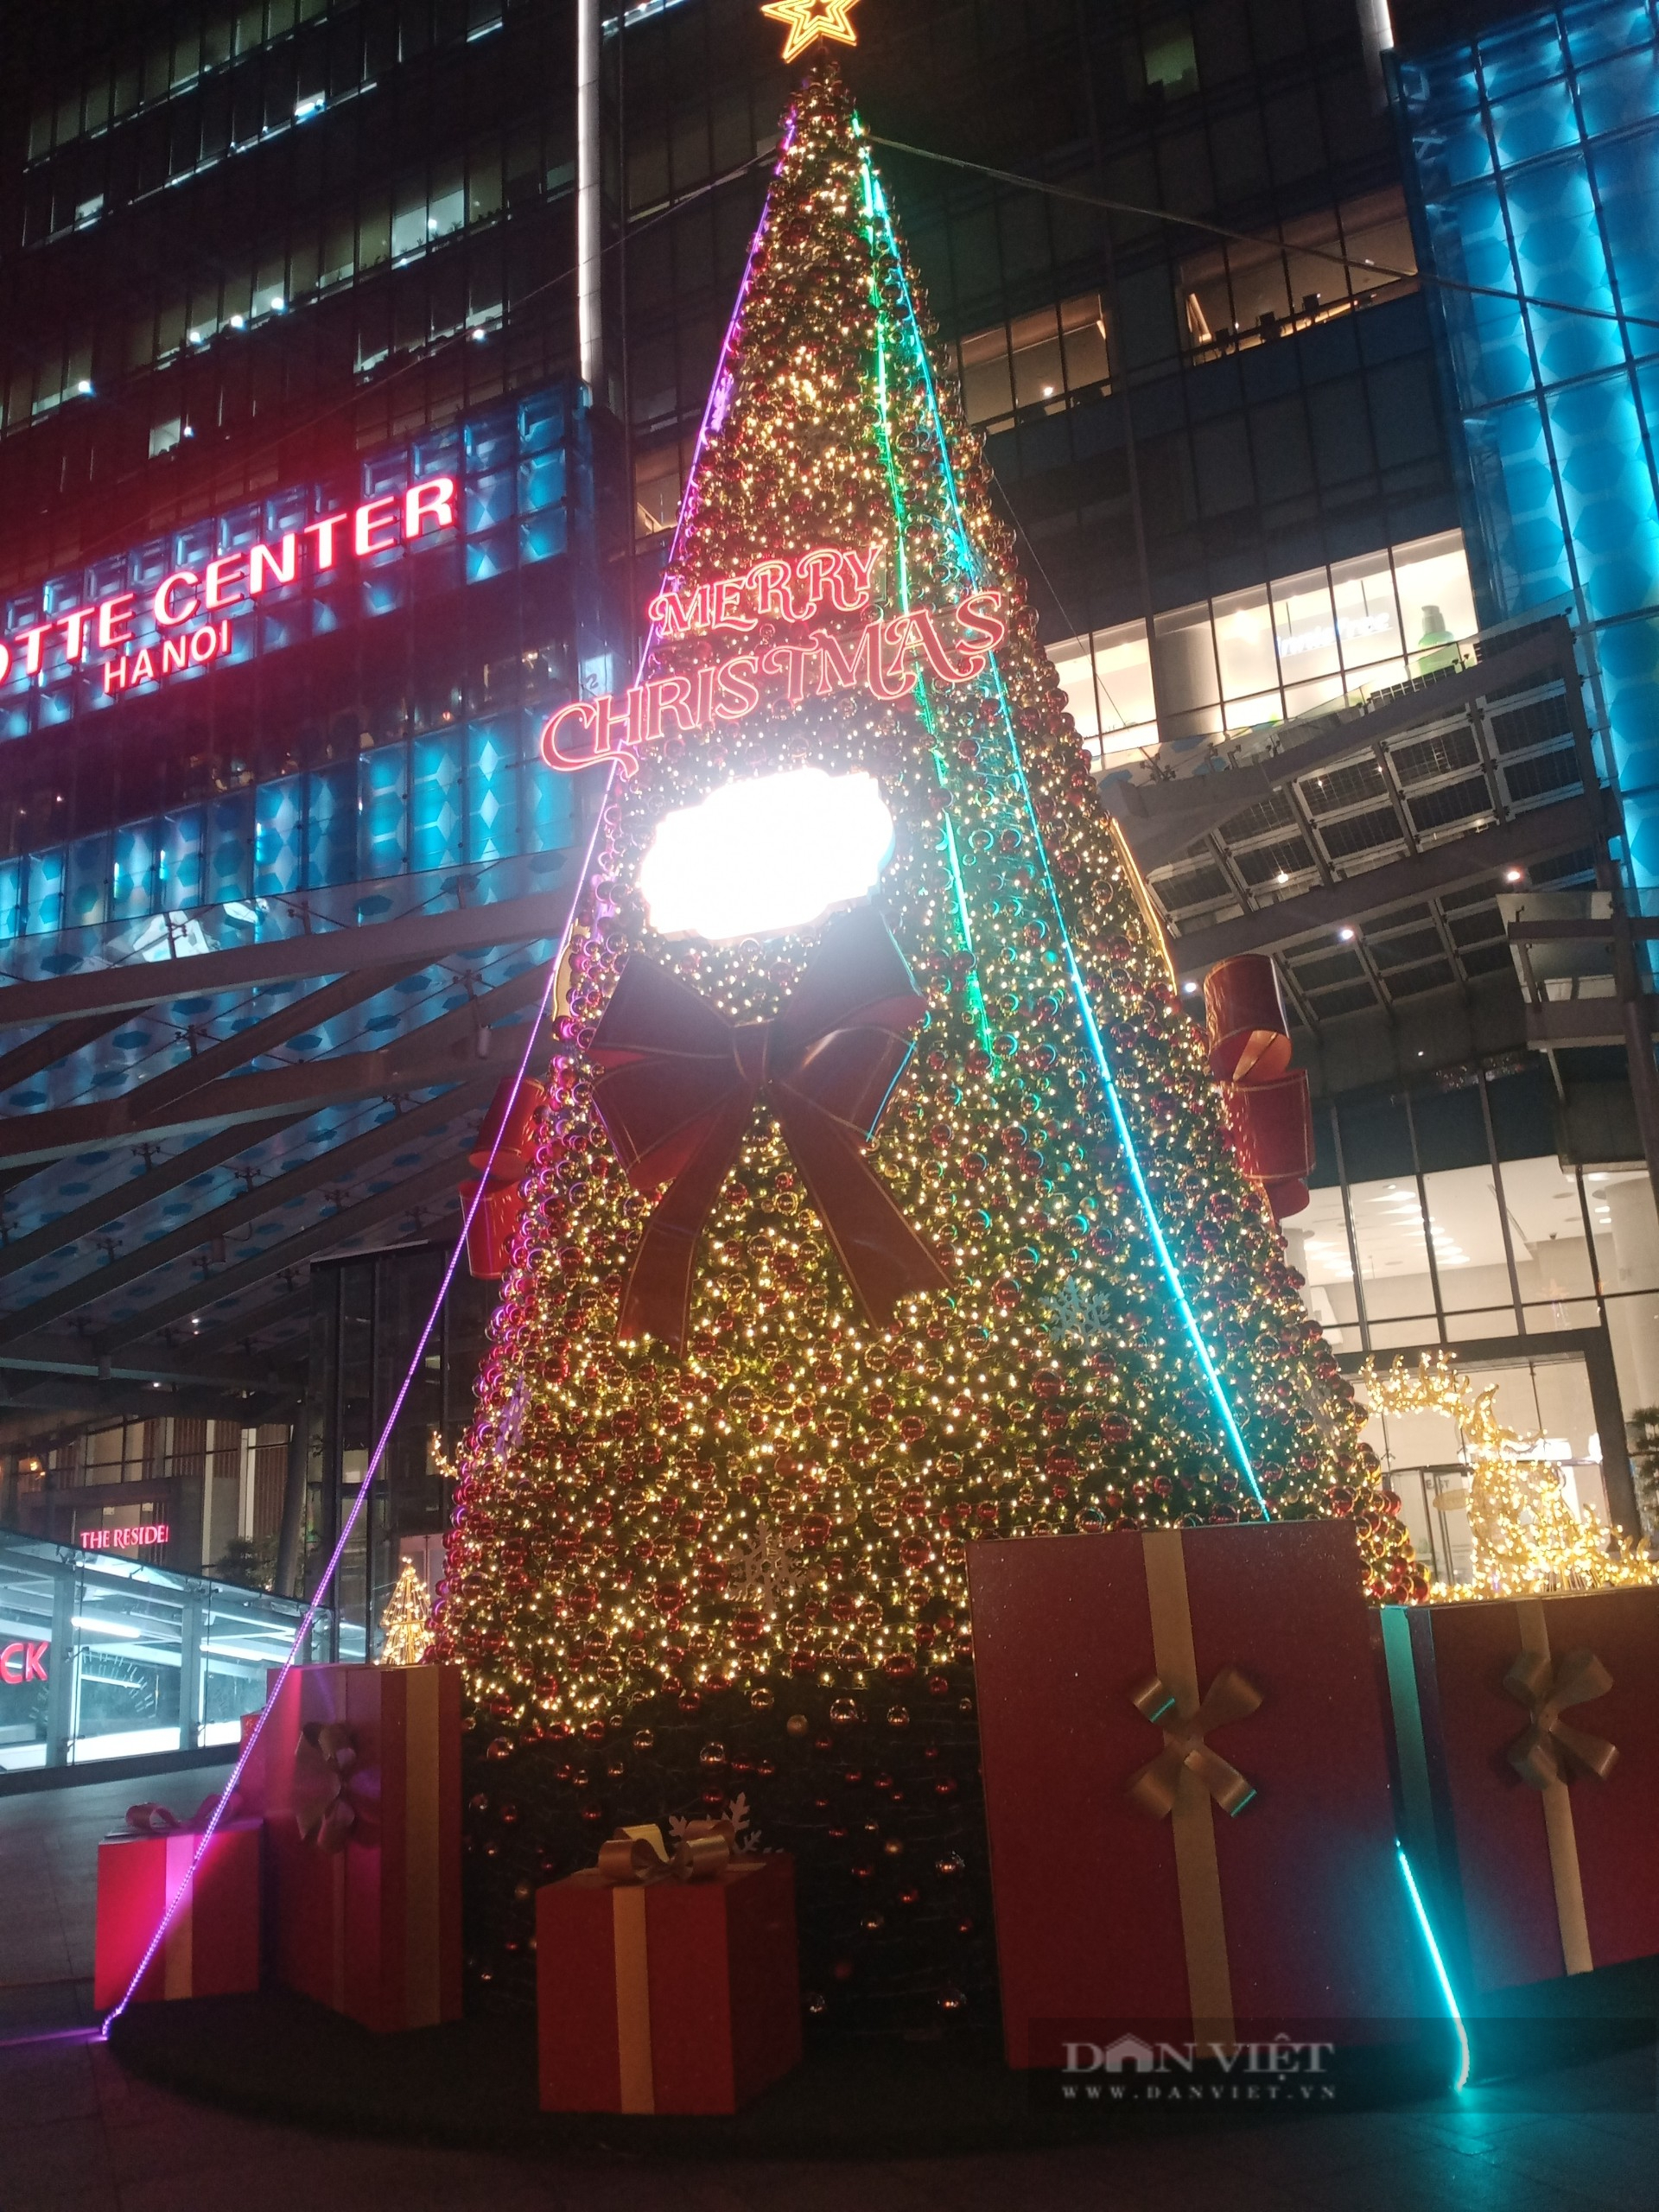 Chụp ảnh Noel 2021 để lưu giữ những khoảnh khắc đặc biệt của năm mới. Được trang trí bằng đèn led đầy màu sắc, các cửa hàng và trung tâm thương mại chắc chắn sẽ là địa điểm lý tưởng để bạn chụp ảnh Noel ấn tượng. Nhanh chân đến với những địa điểm này để tạo nên những bức ảnh đầy ấn tượng cho mùa Giáng sinh sắp tới.